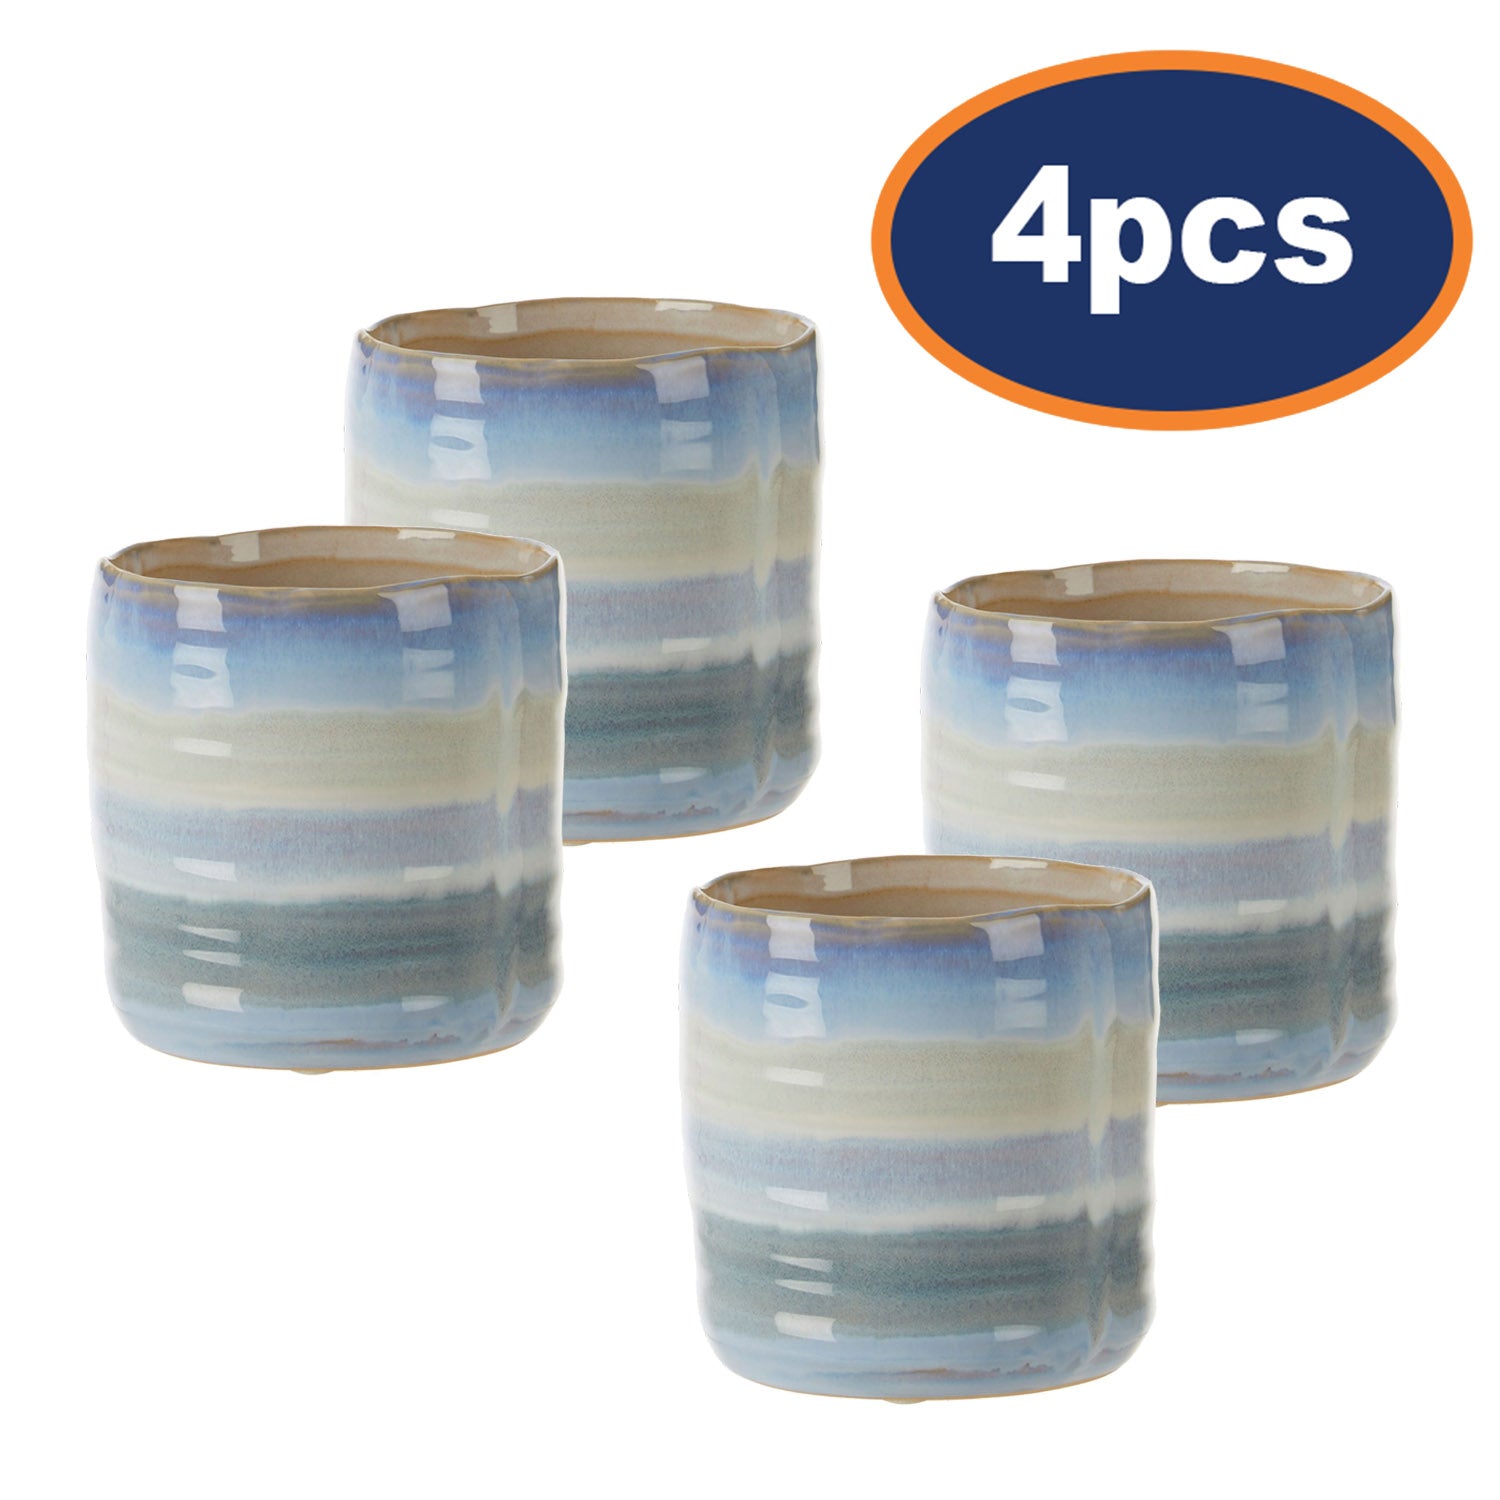 4pcs Caldera 2-Tone Aqua Blue Stoneware Small Planter